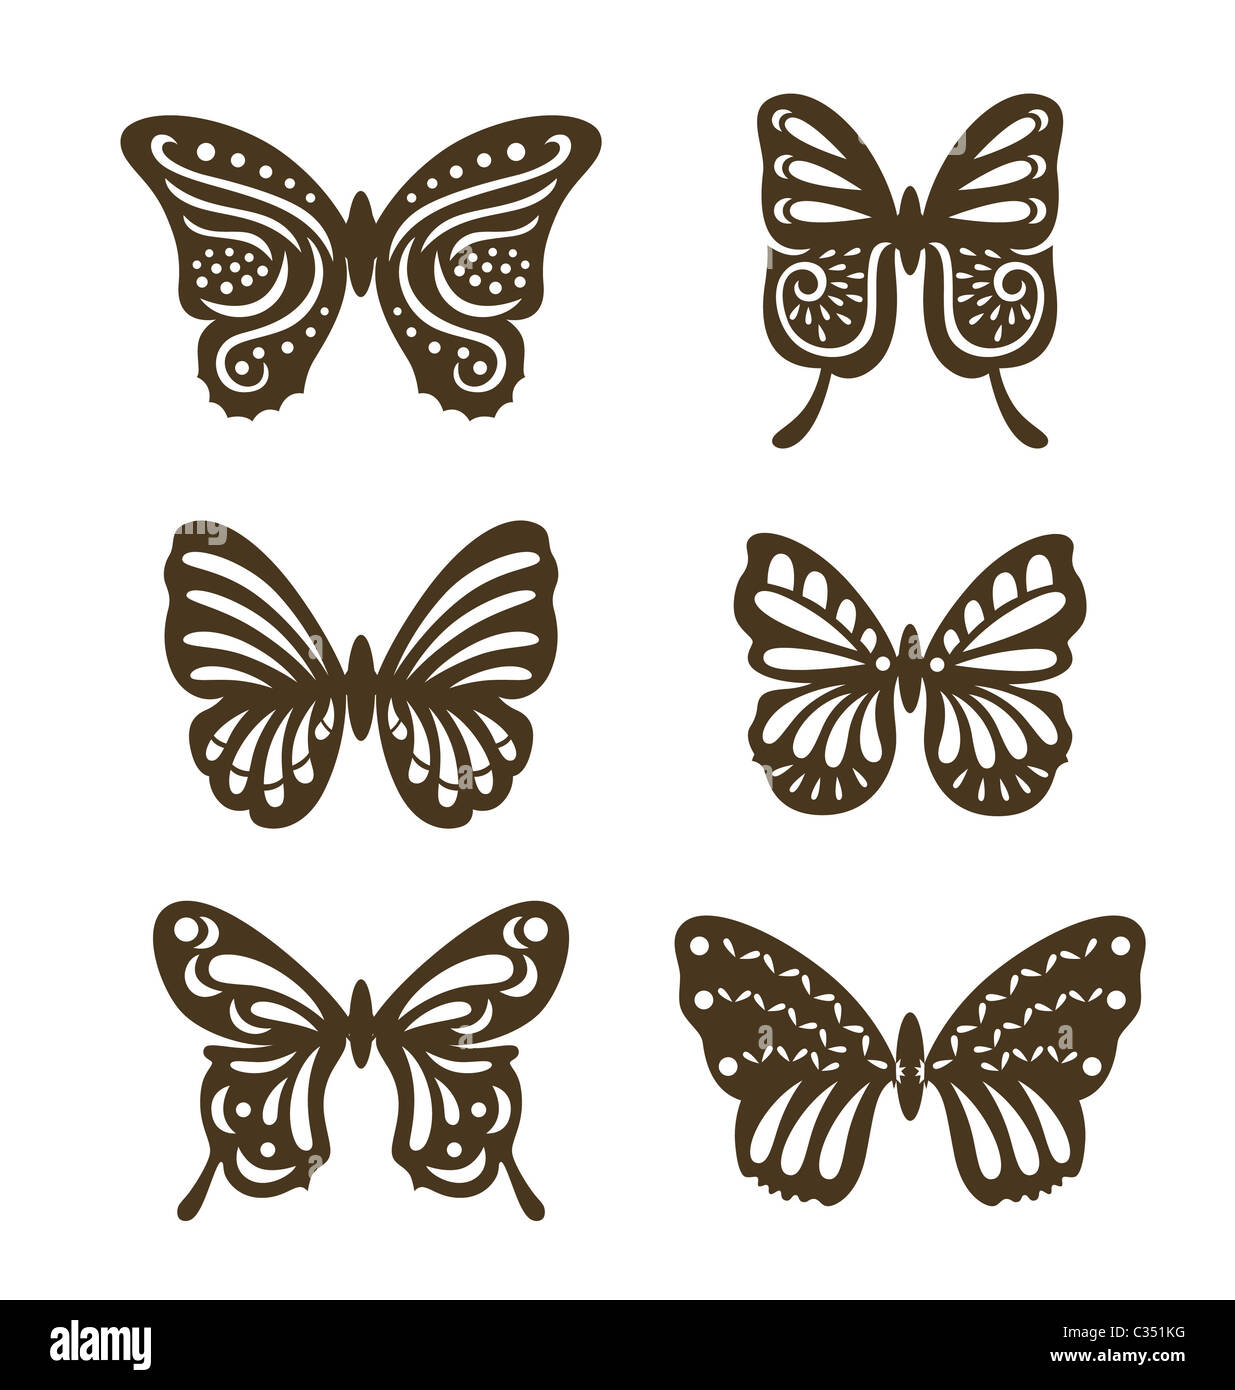 Conjunto de mariposas decorativas, decoradas con estilo de corte